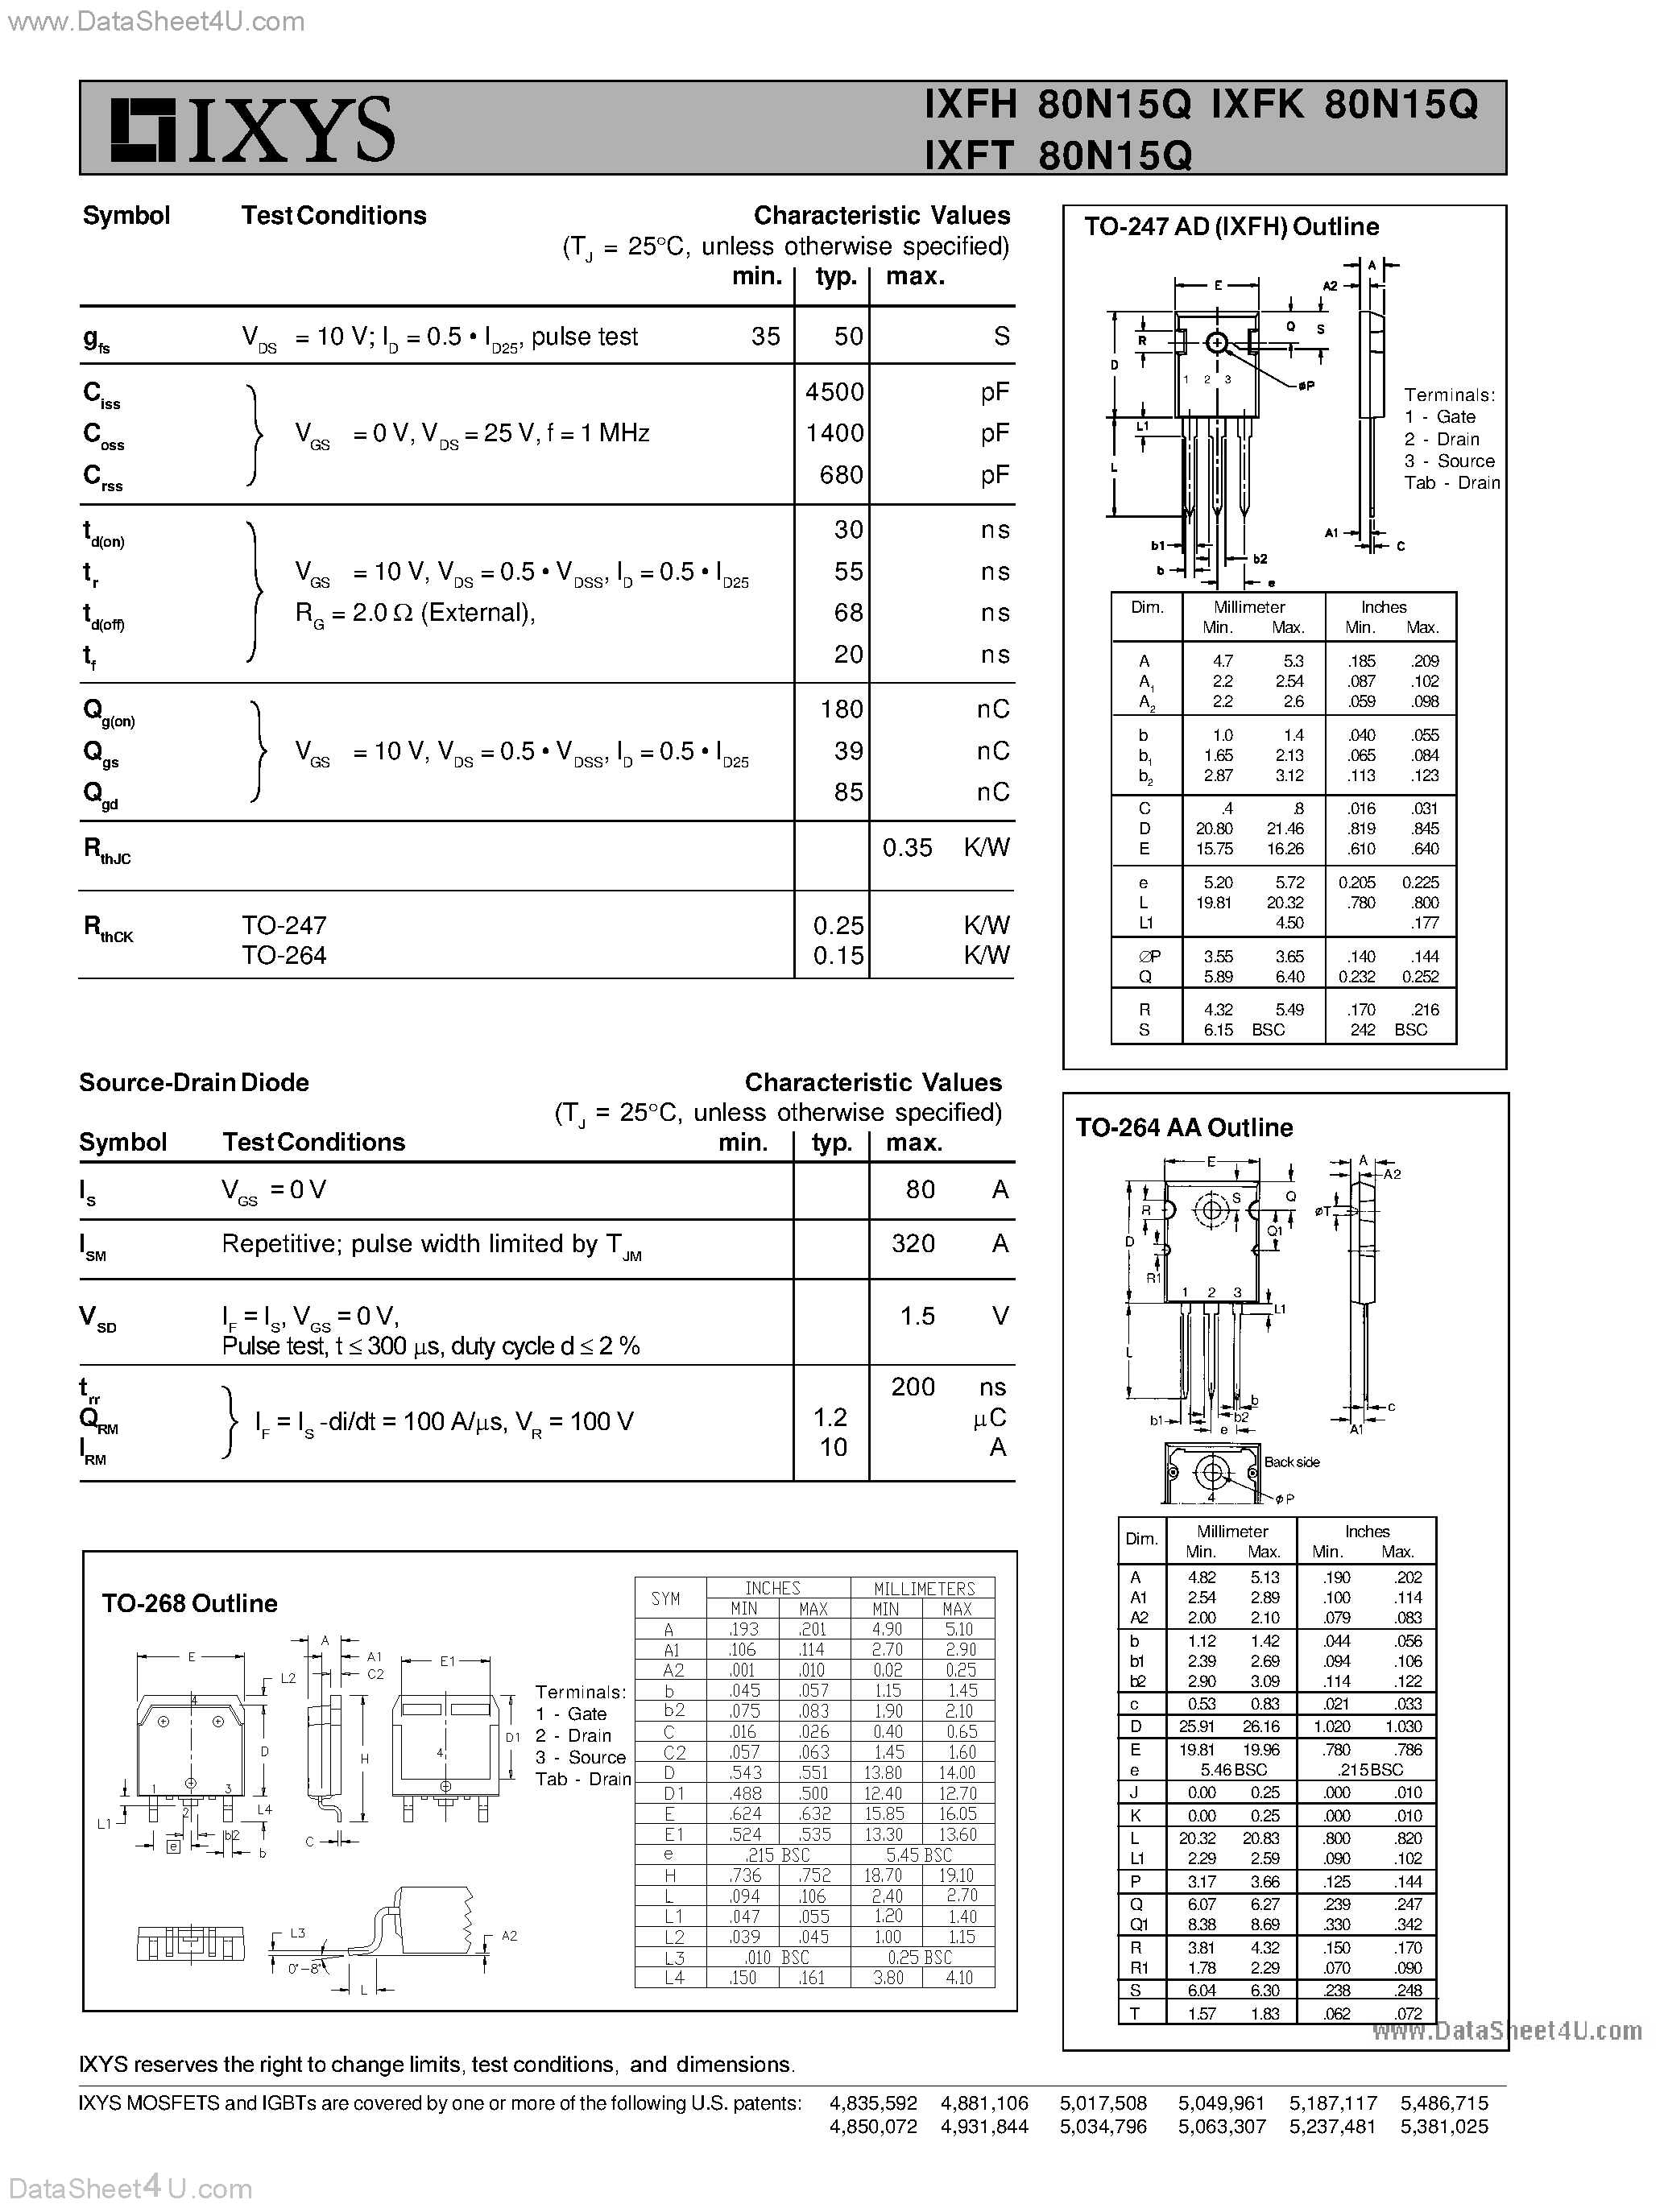 Даташит IXFH80N15Q - (IXFx80N15Q) HiPerFET Power MOSFETs Q-Class страница 2